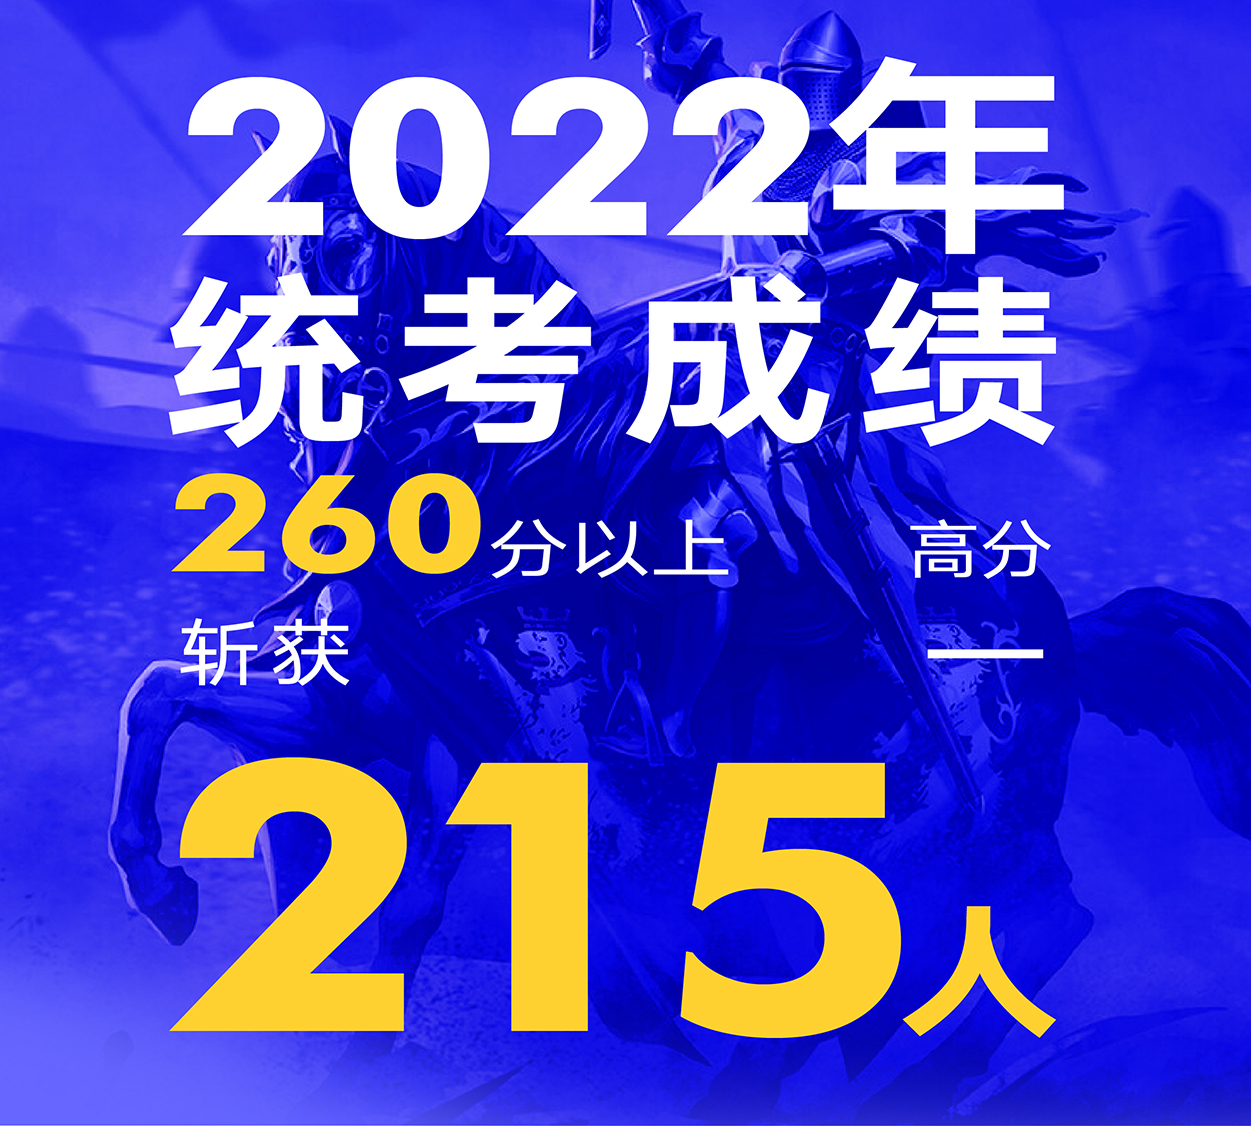 2022年斩获广西美术统考260分以上共215人